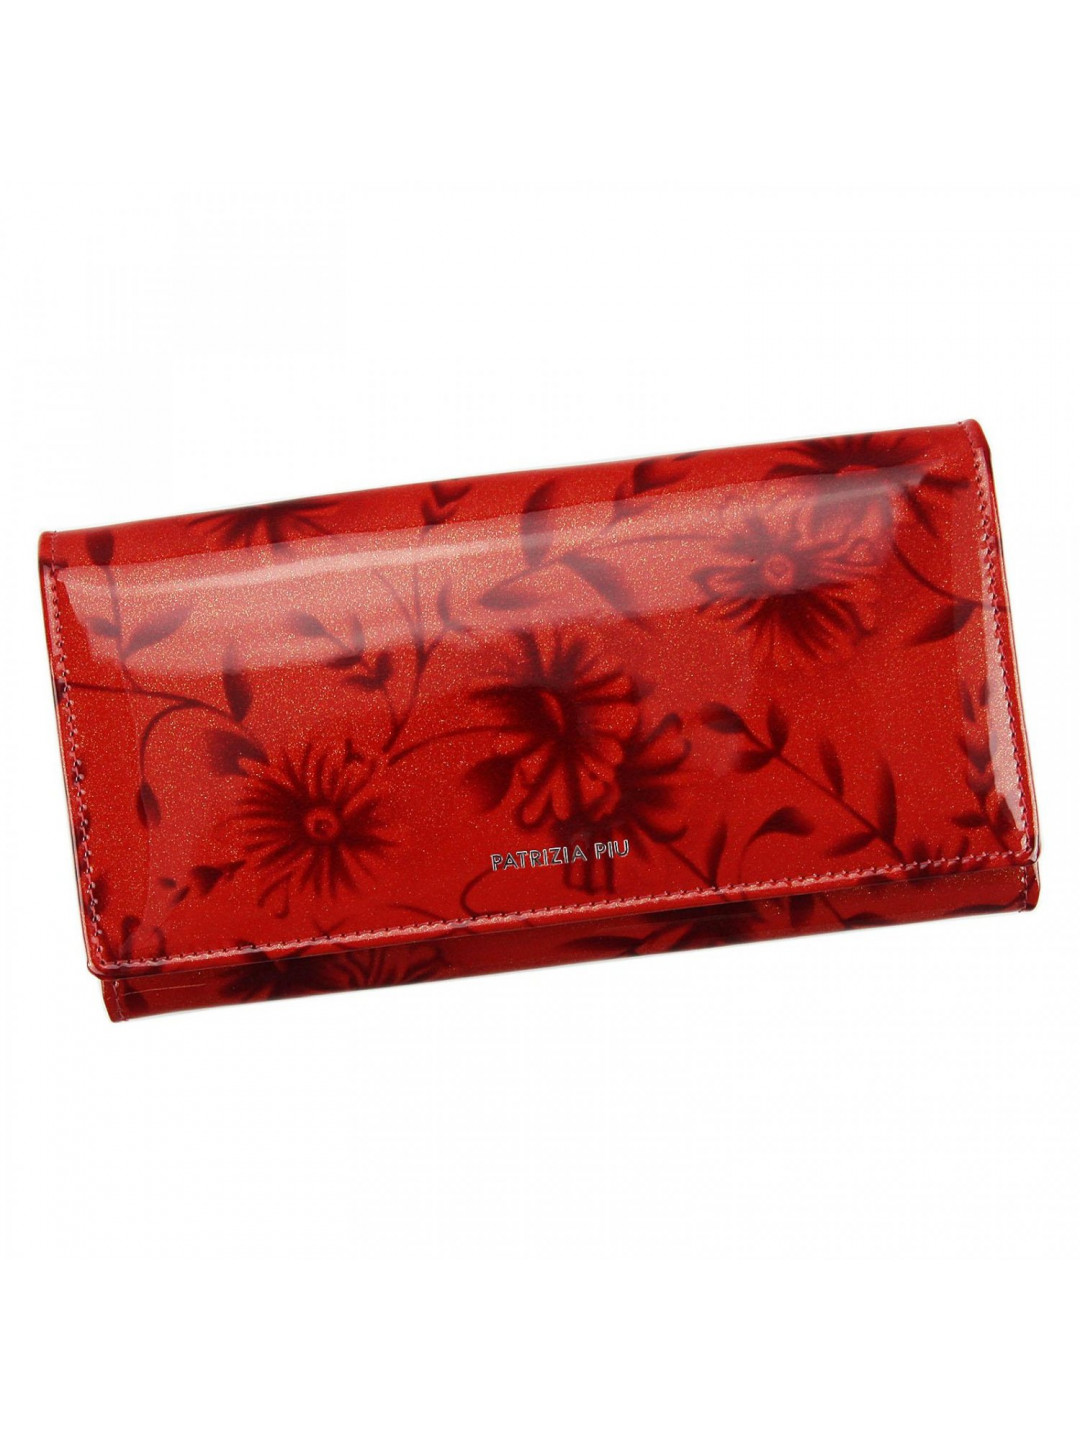 Luxusní dámská peněženka Patrizia Lolipa červená